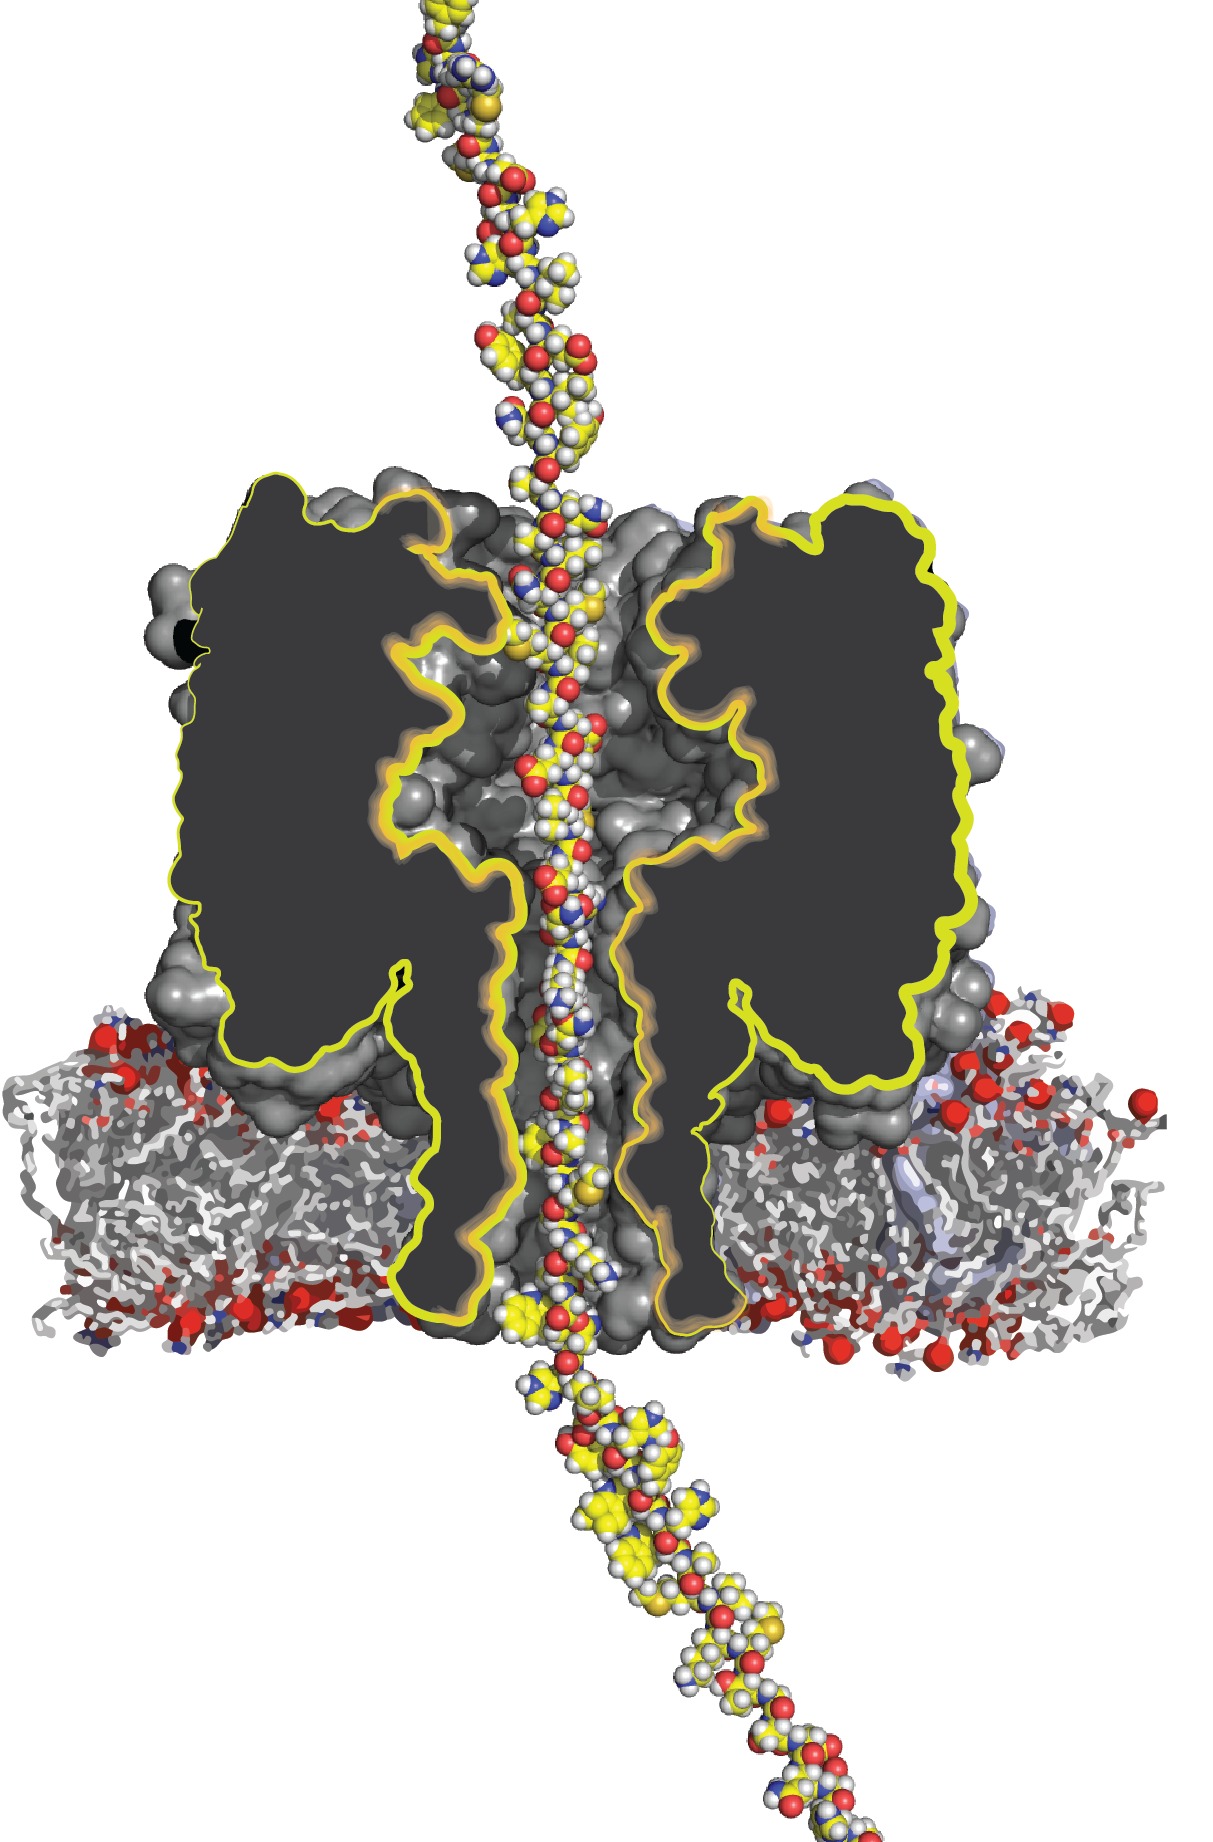 protein through a nanopore